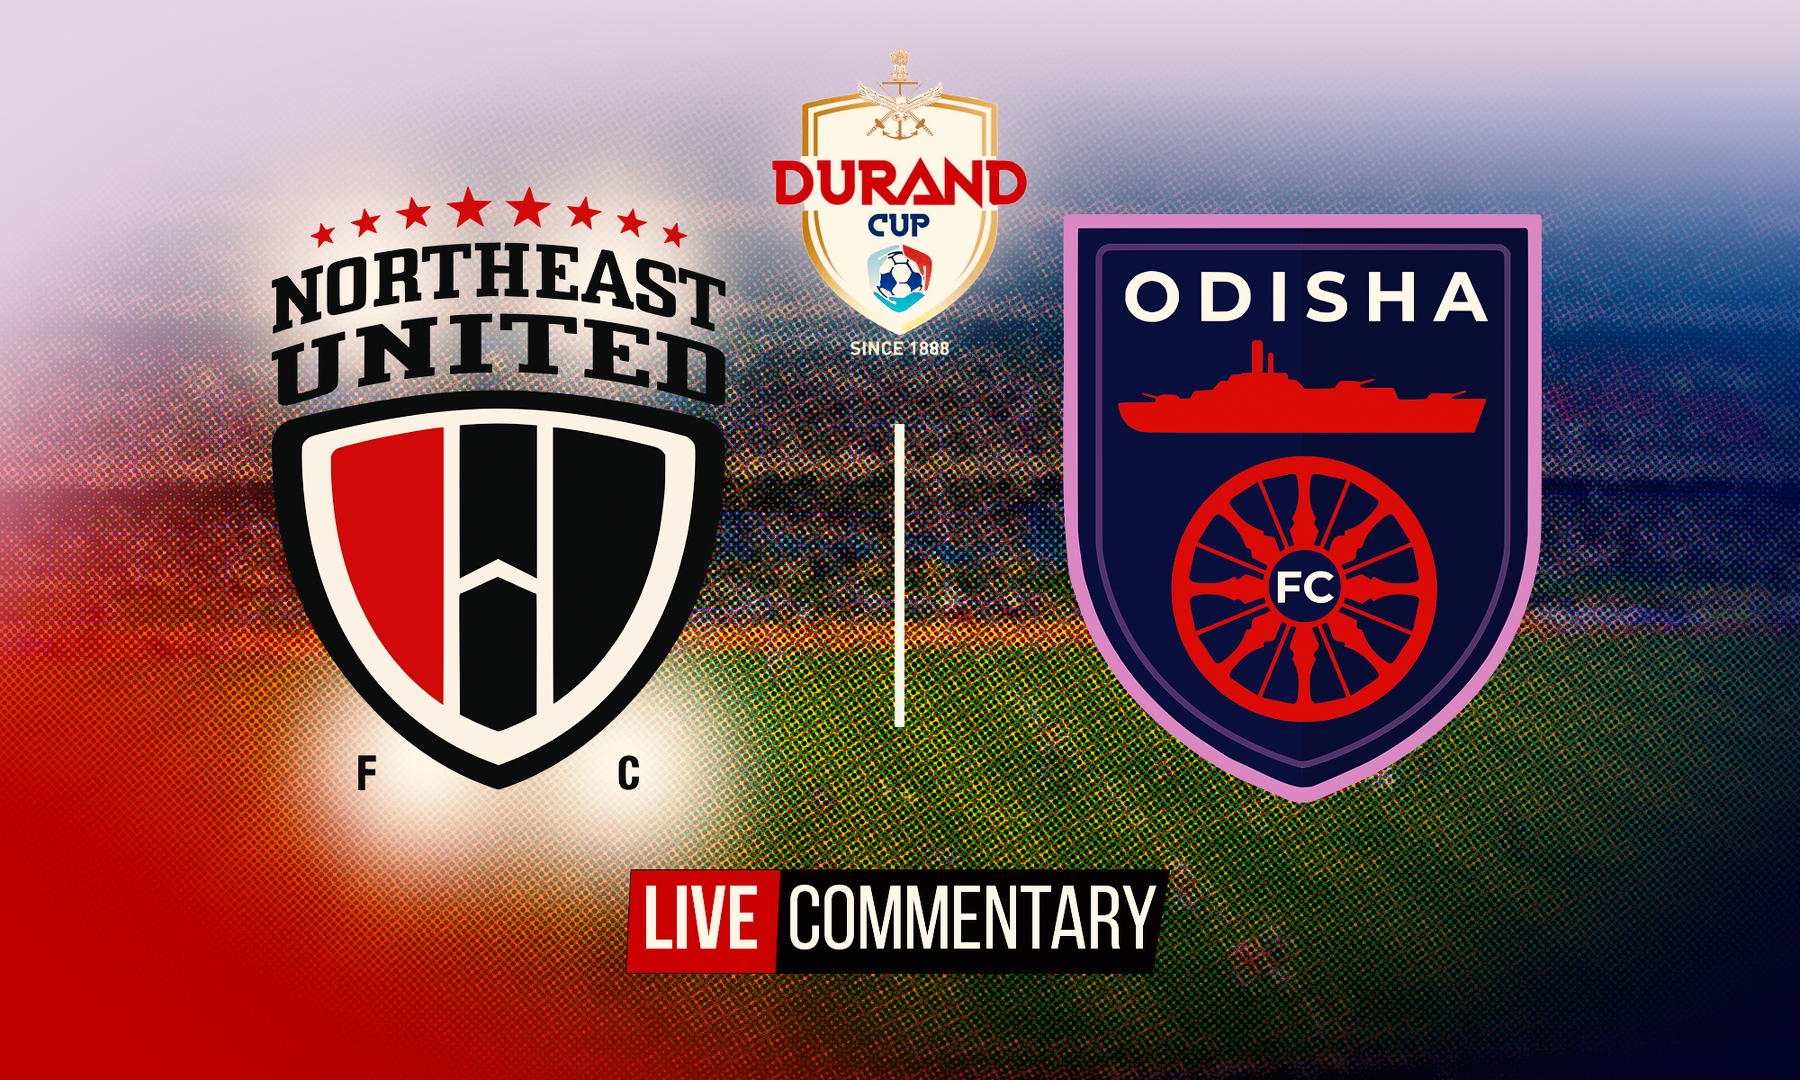 NorthEast United vs Odisha FC